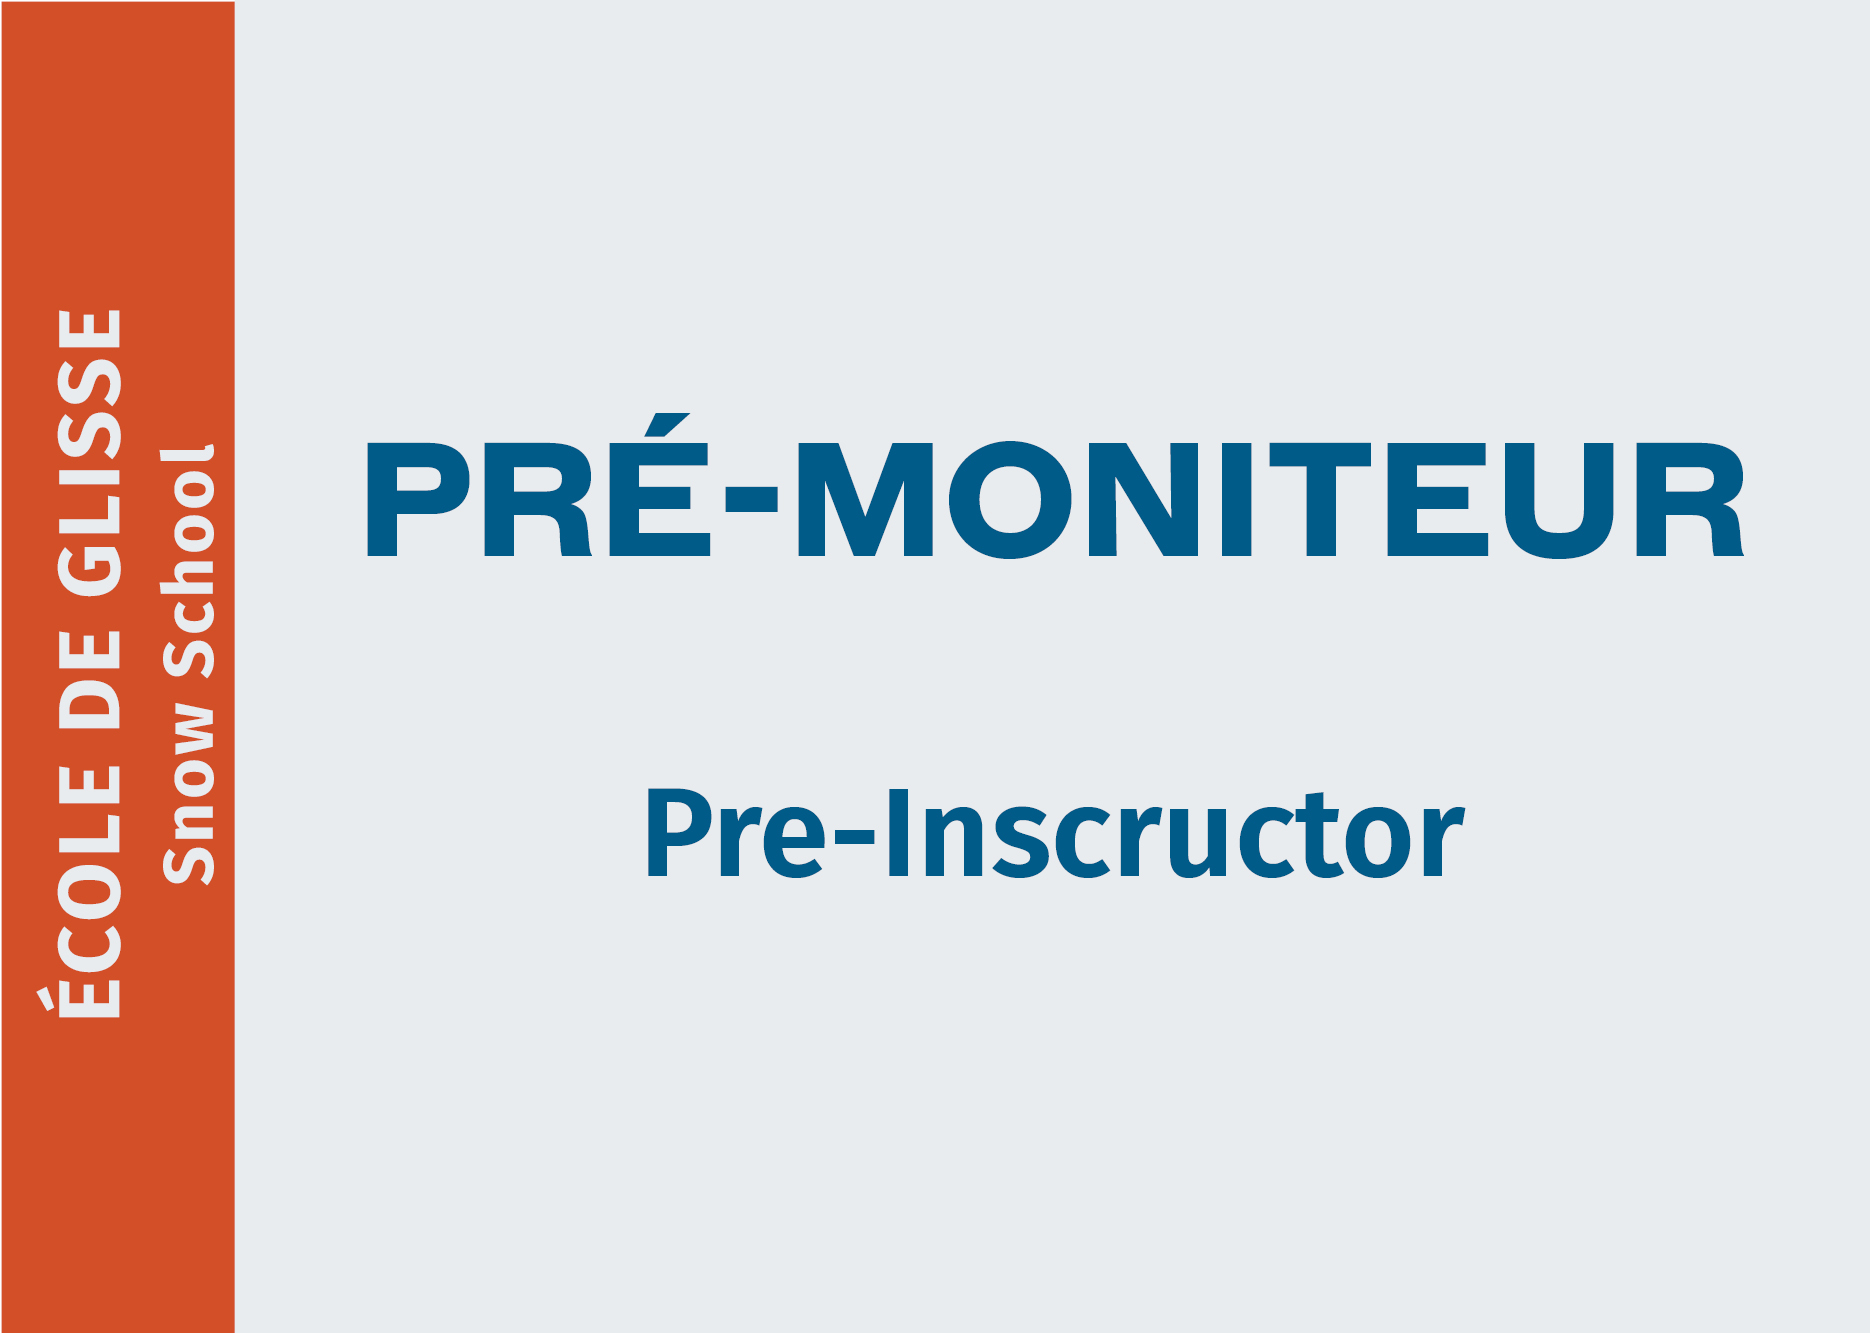 Pré-Moniteur